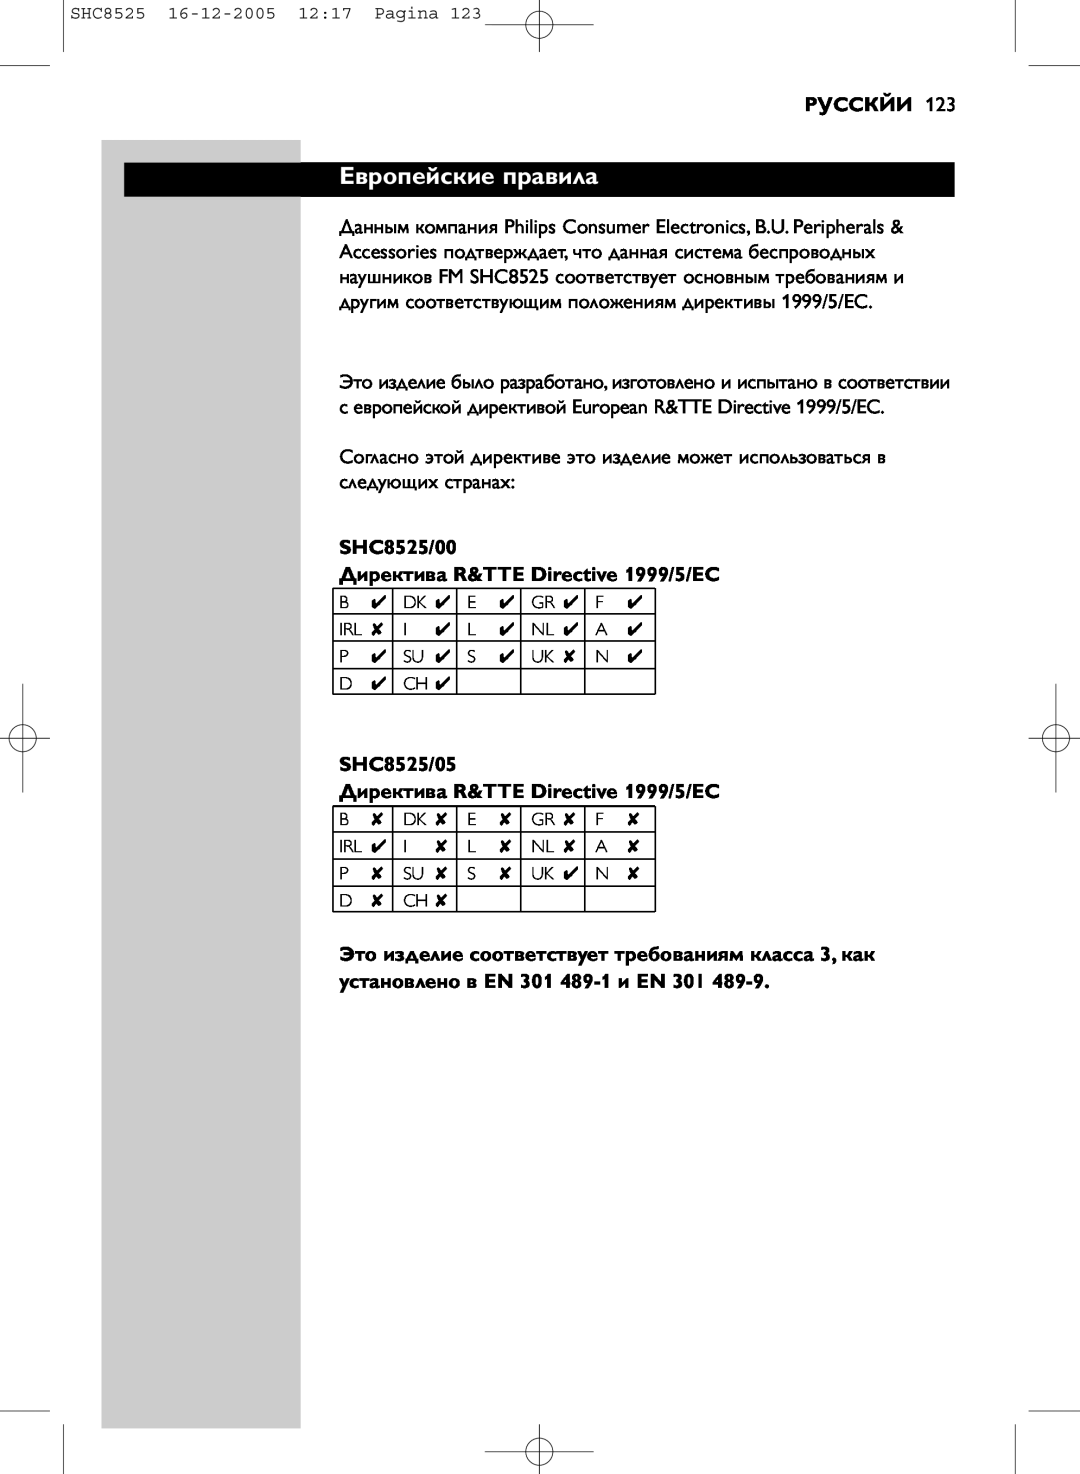 Event electronic manual Европейские правила, Русскйи, SHC8525/00 Директива R&TTE Directive 1999/5/EC 